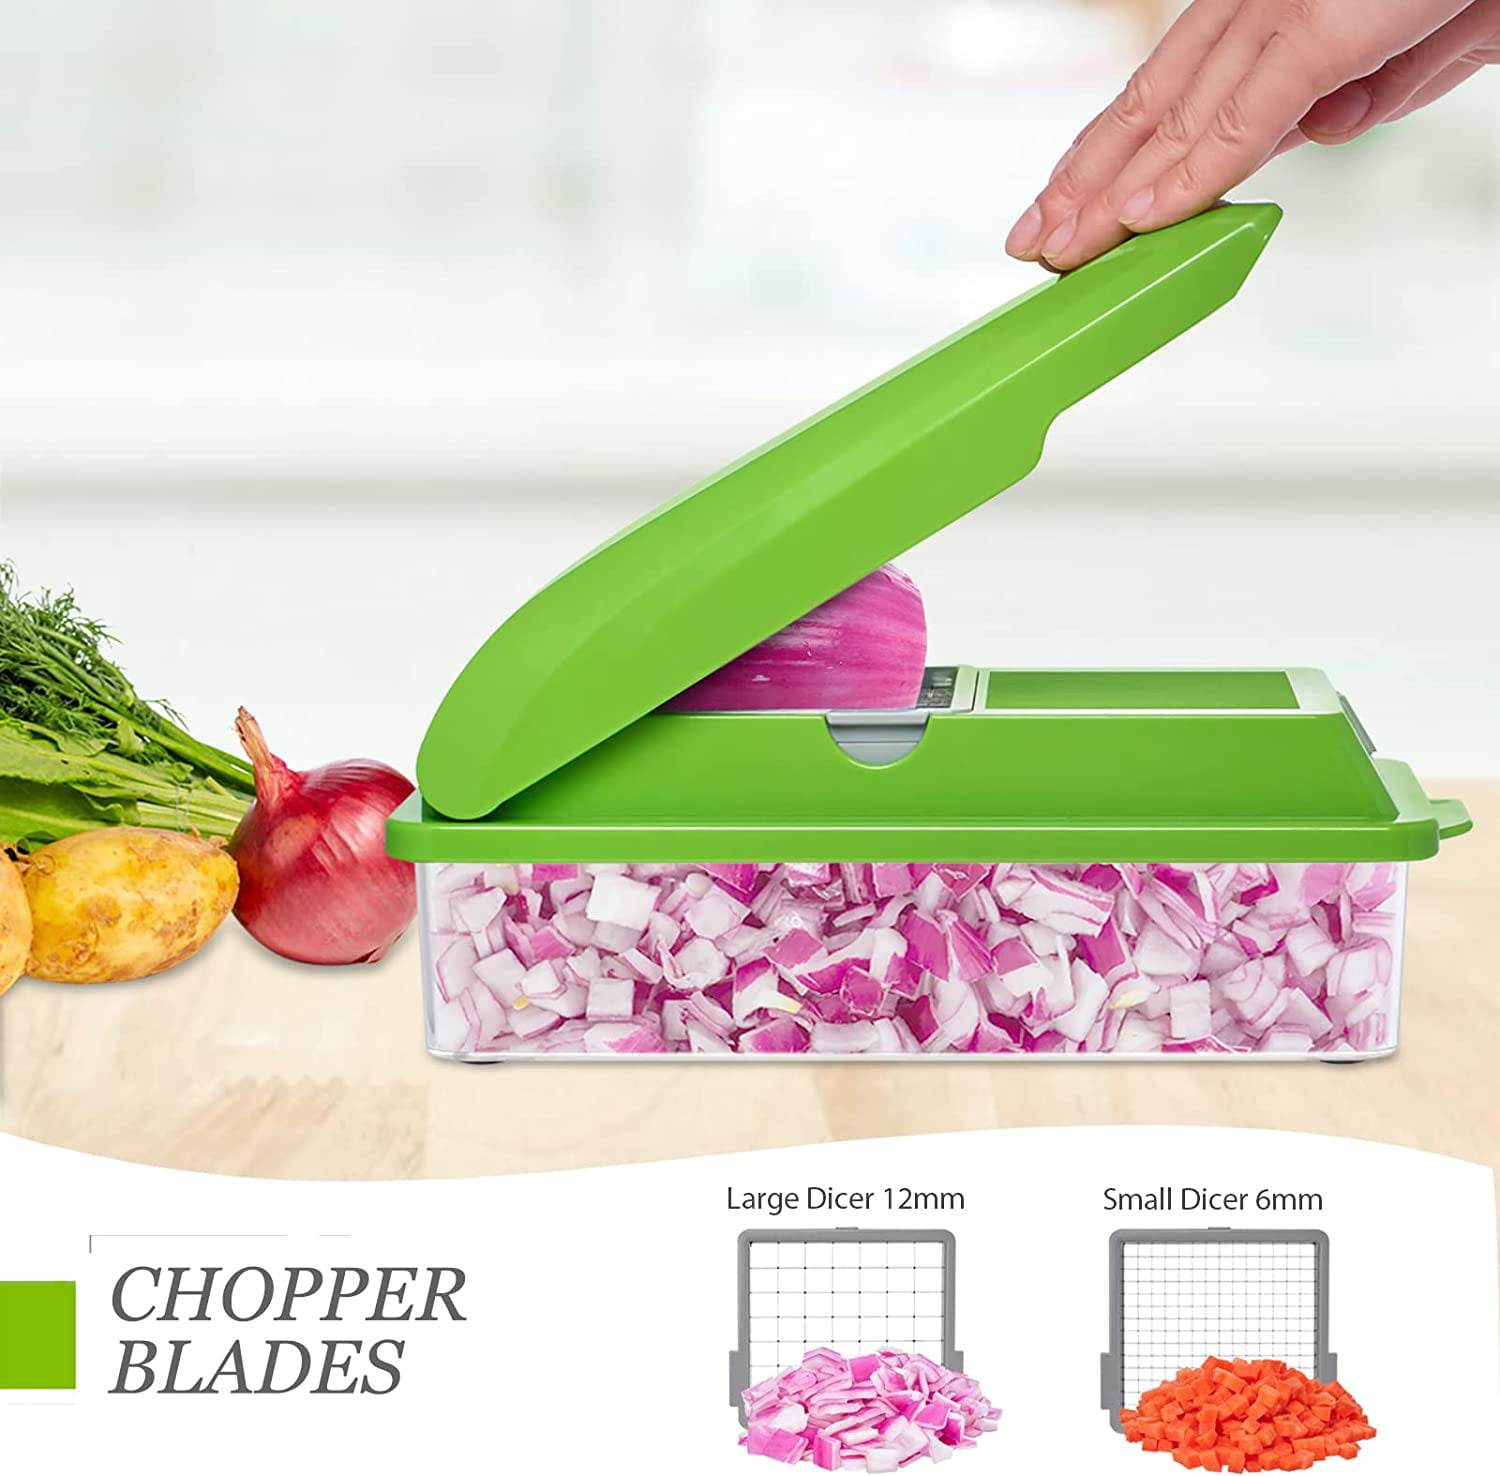 Adofi Pro Vegetable Chopper.8 Blade Vegetable Slicer.Food Chopper